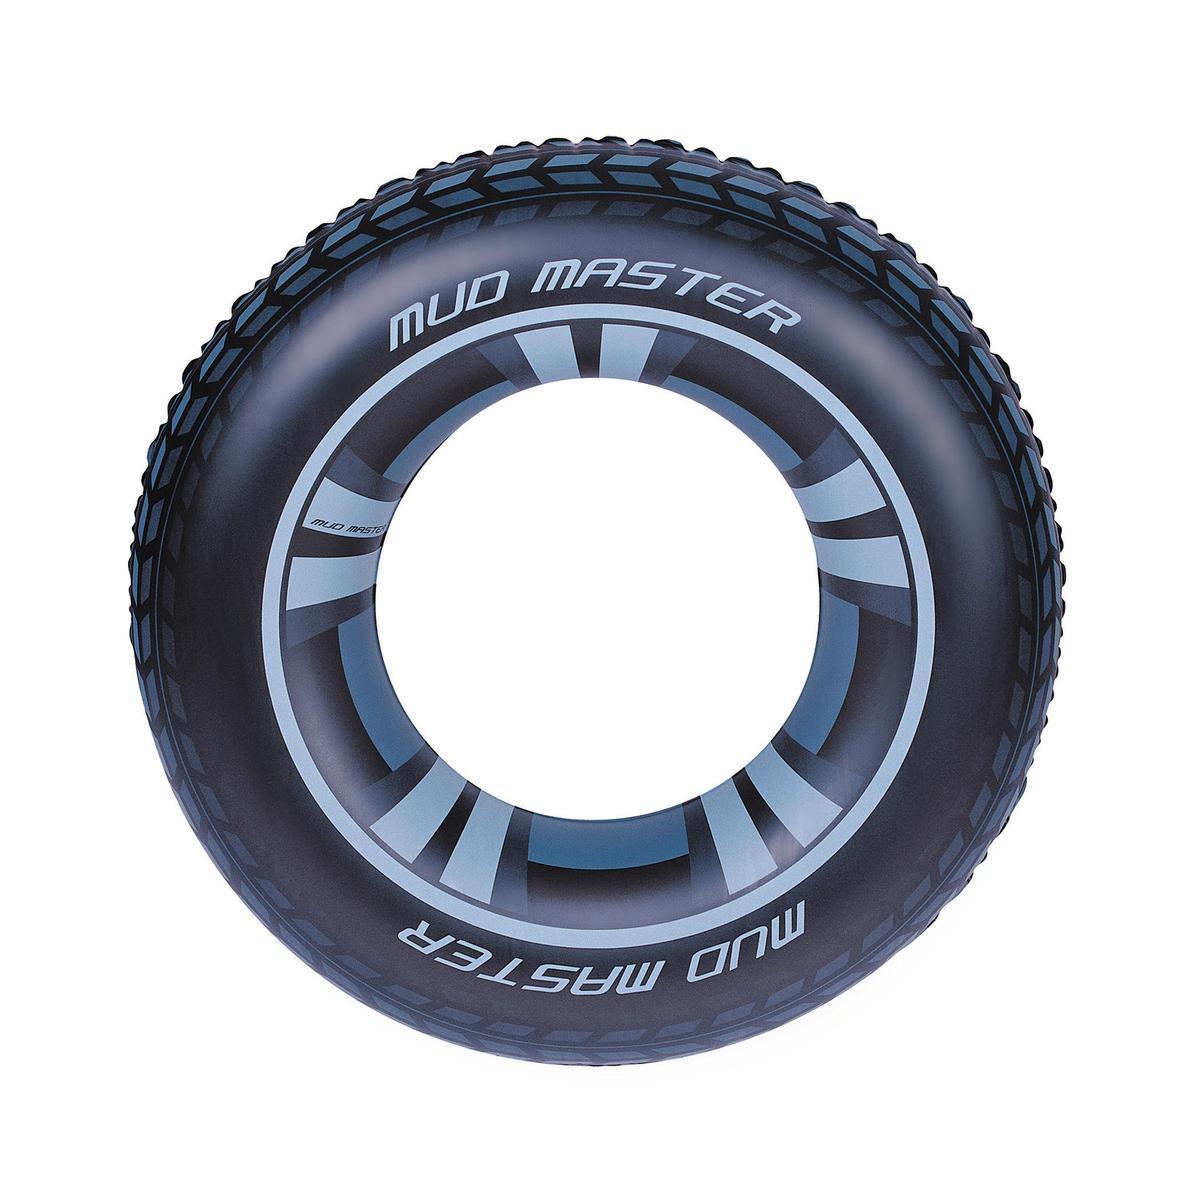 Bouée pneu - ø 91 cm - Différents modèles - Noir